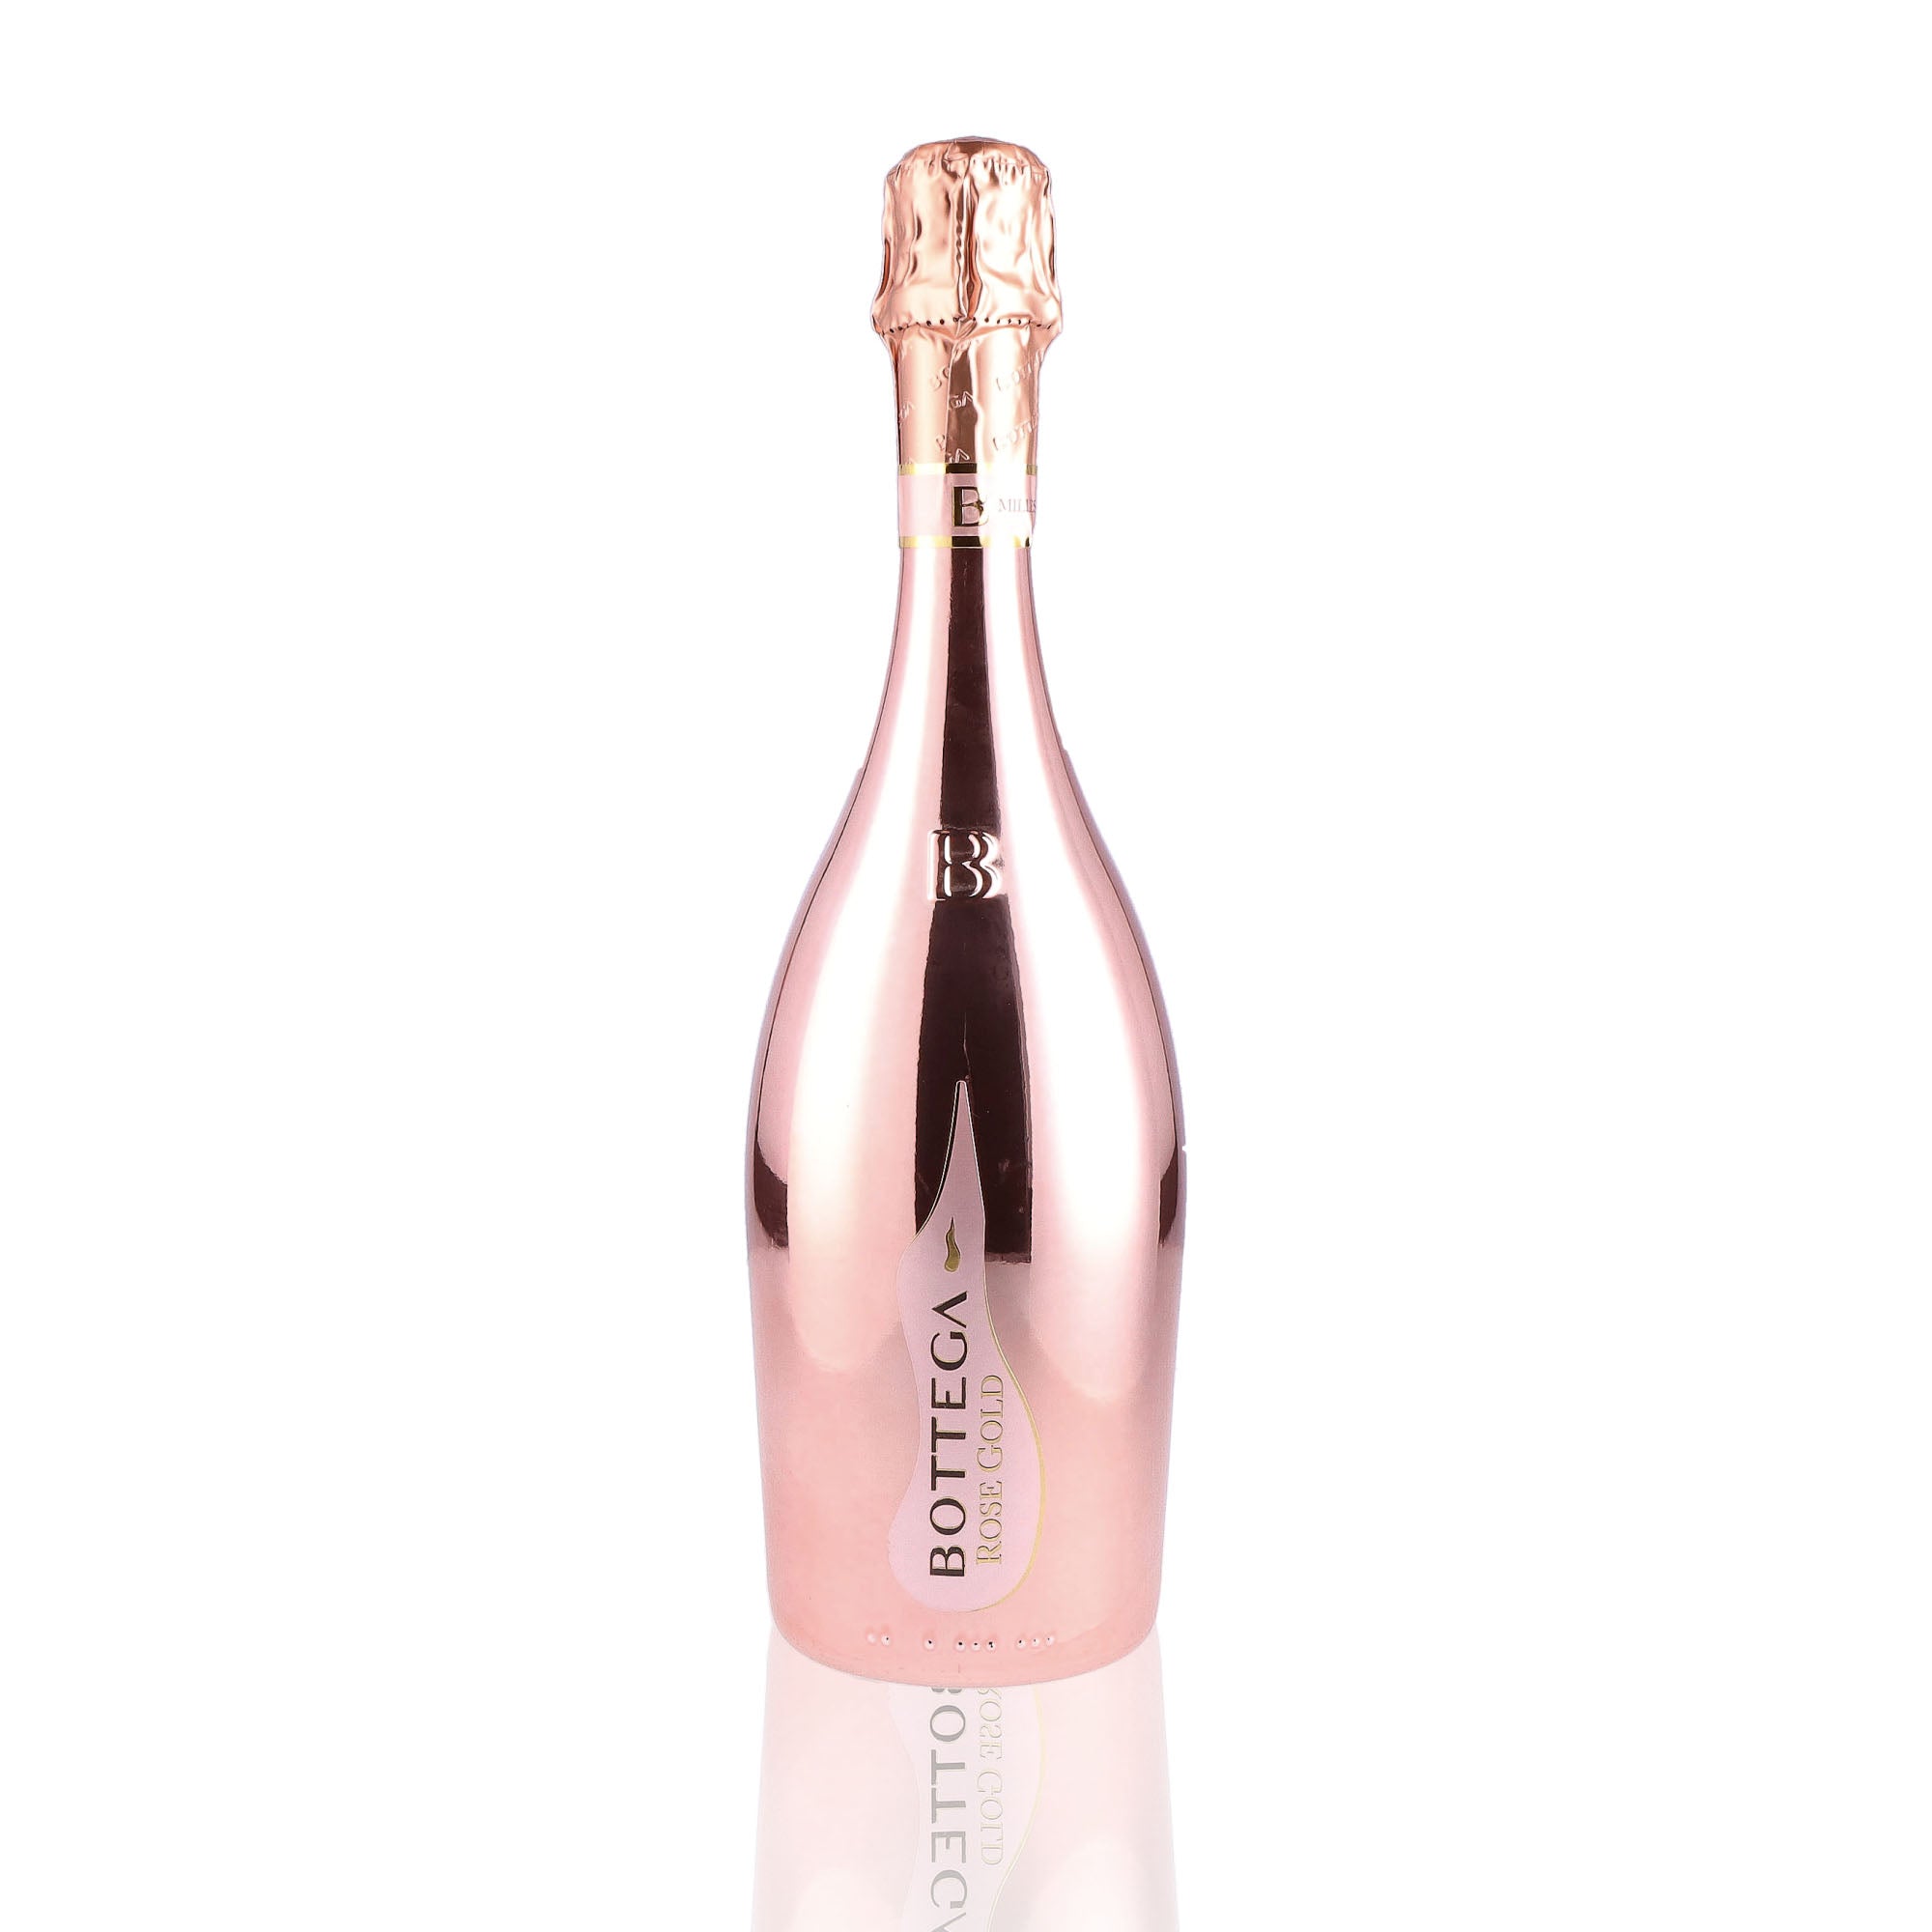 Une bouteille de prosecco de la marque Bottega, de type rosé, nommée gold.